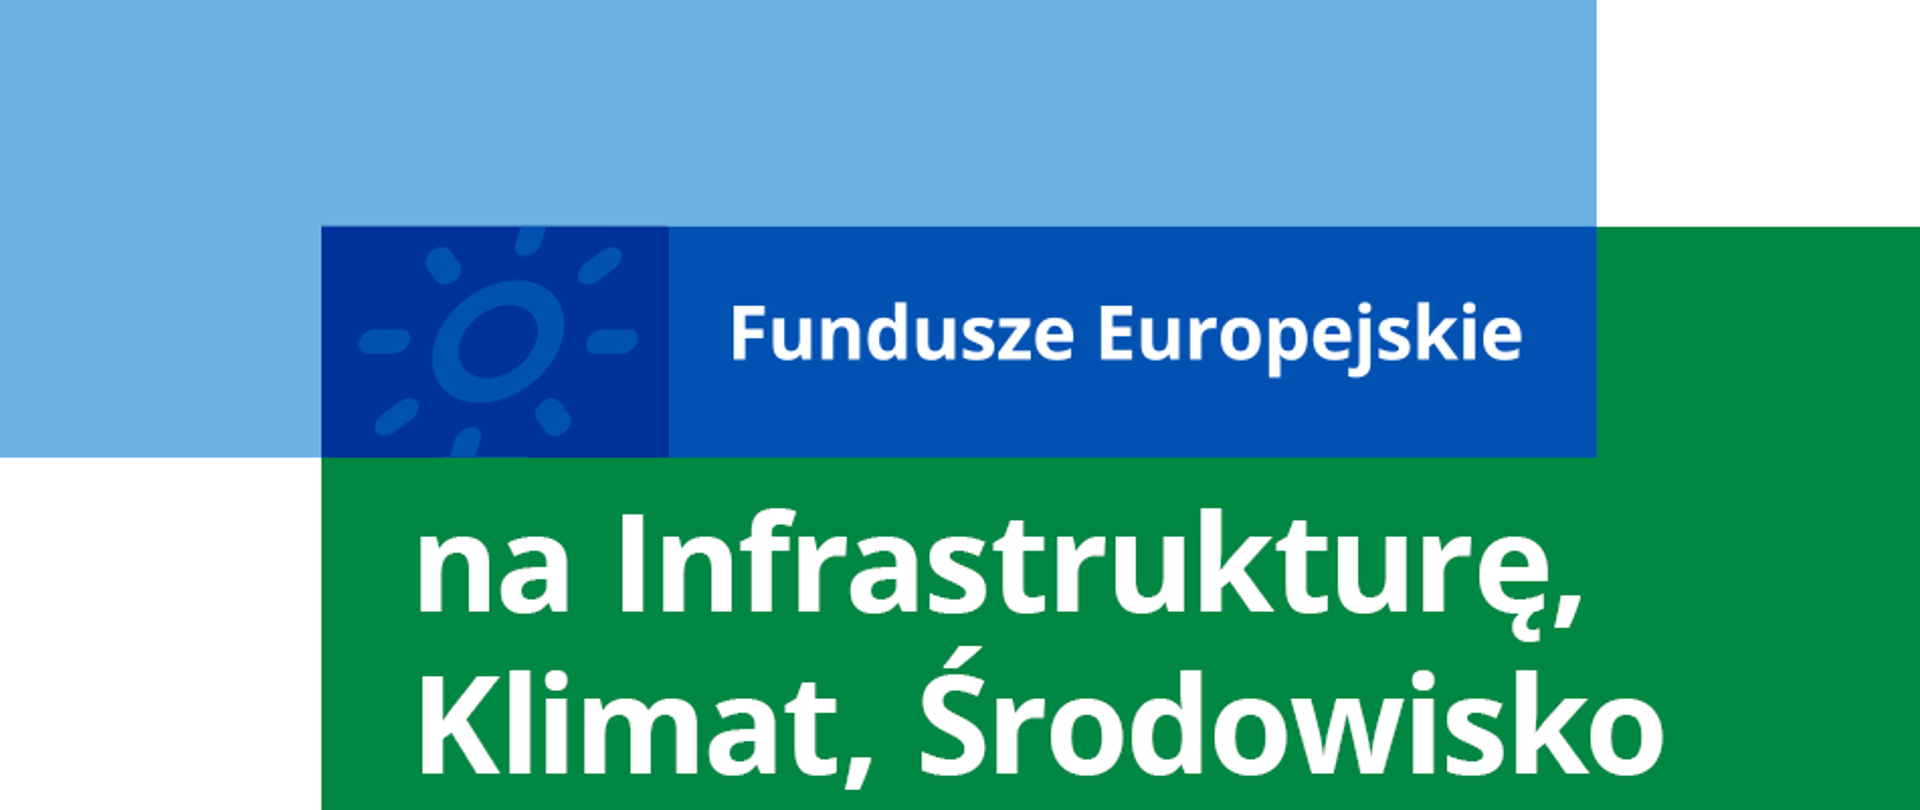 Główny motyw programu: Fundusze Europejskie na Infrastrukturę, Klimat, Środowisko